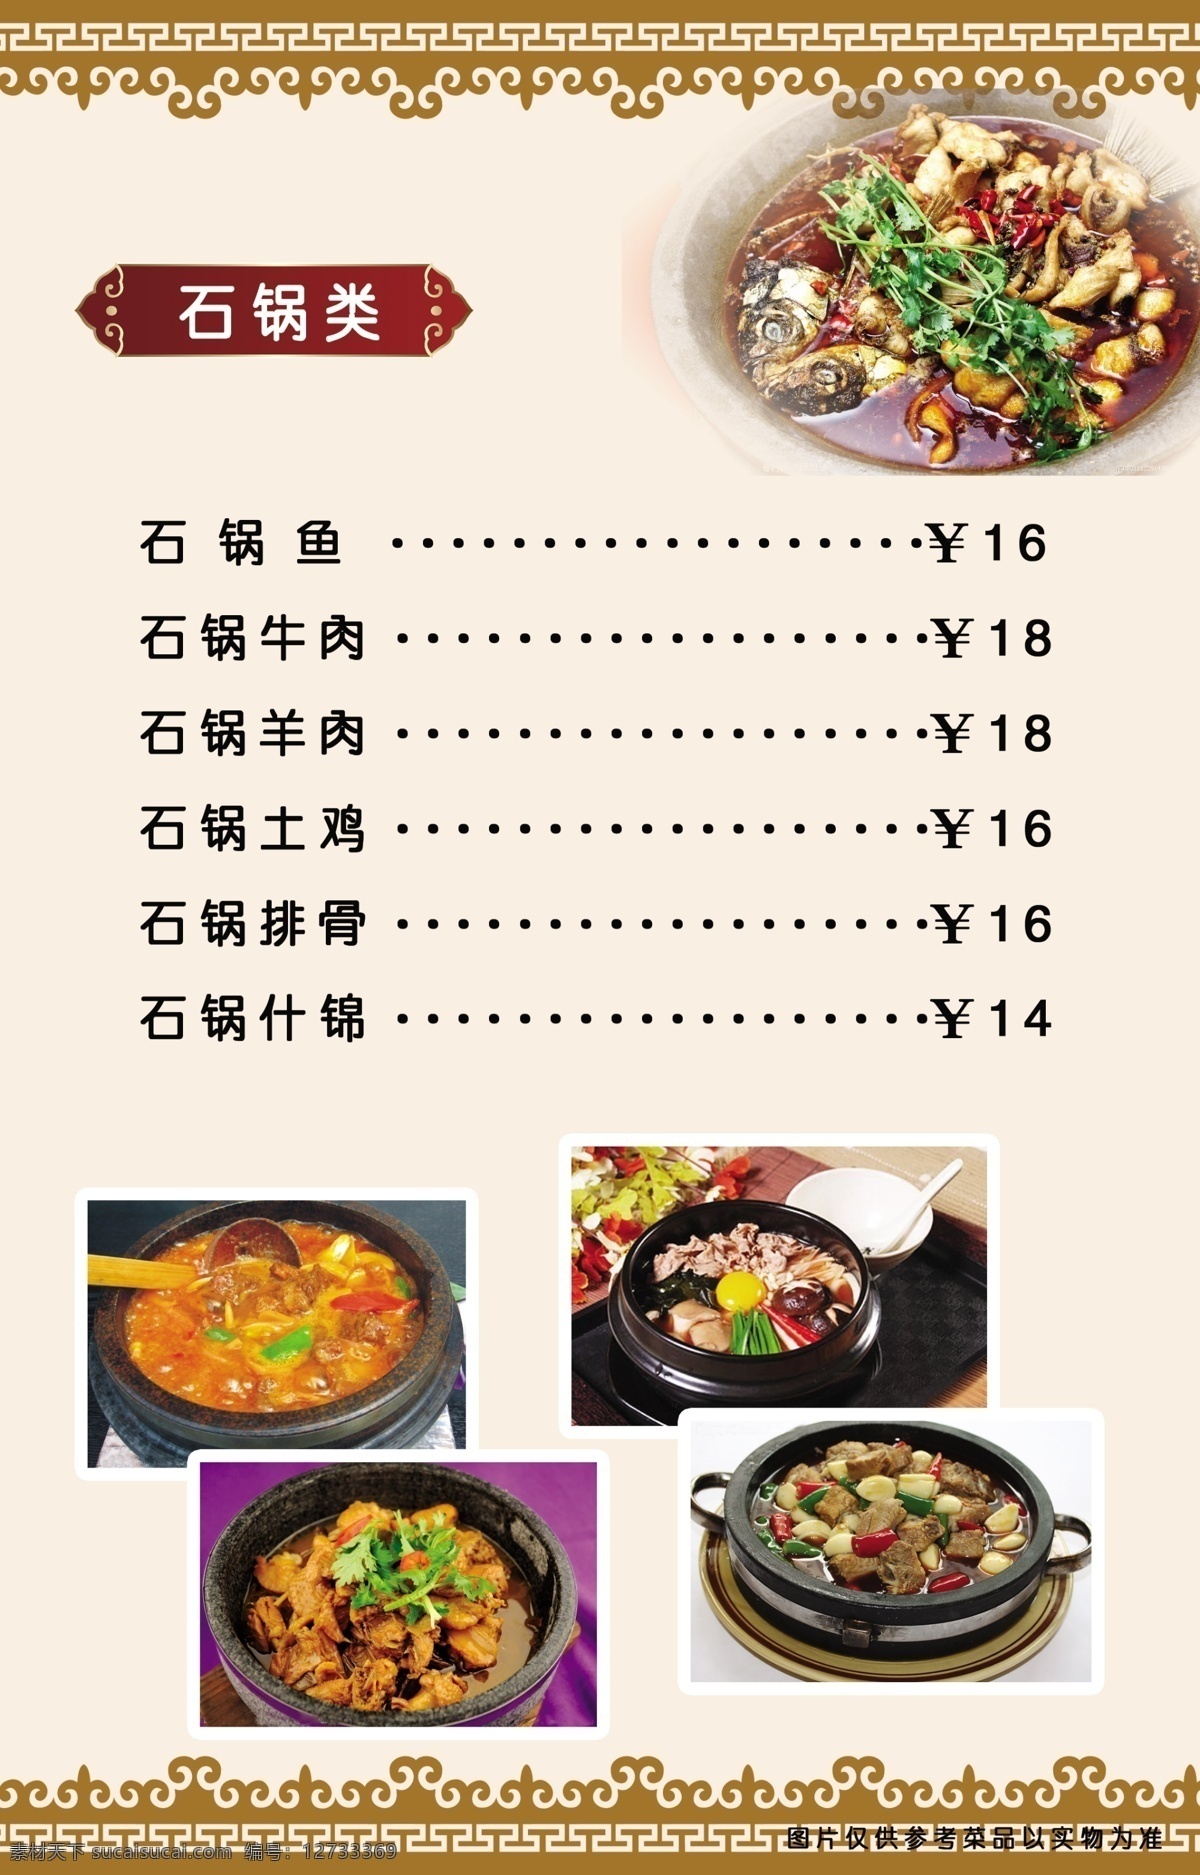 石锅类 菜谱样式系列 菜谱 样式 系列 菜单 dm单 一般菜谱样式